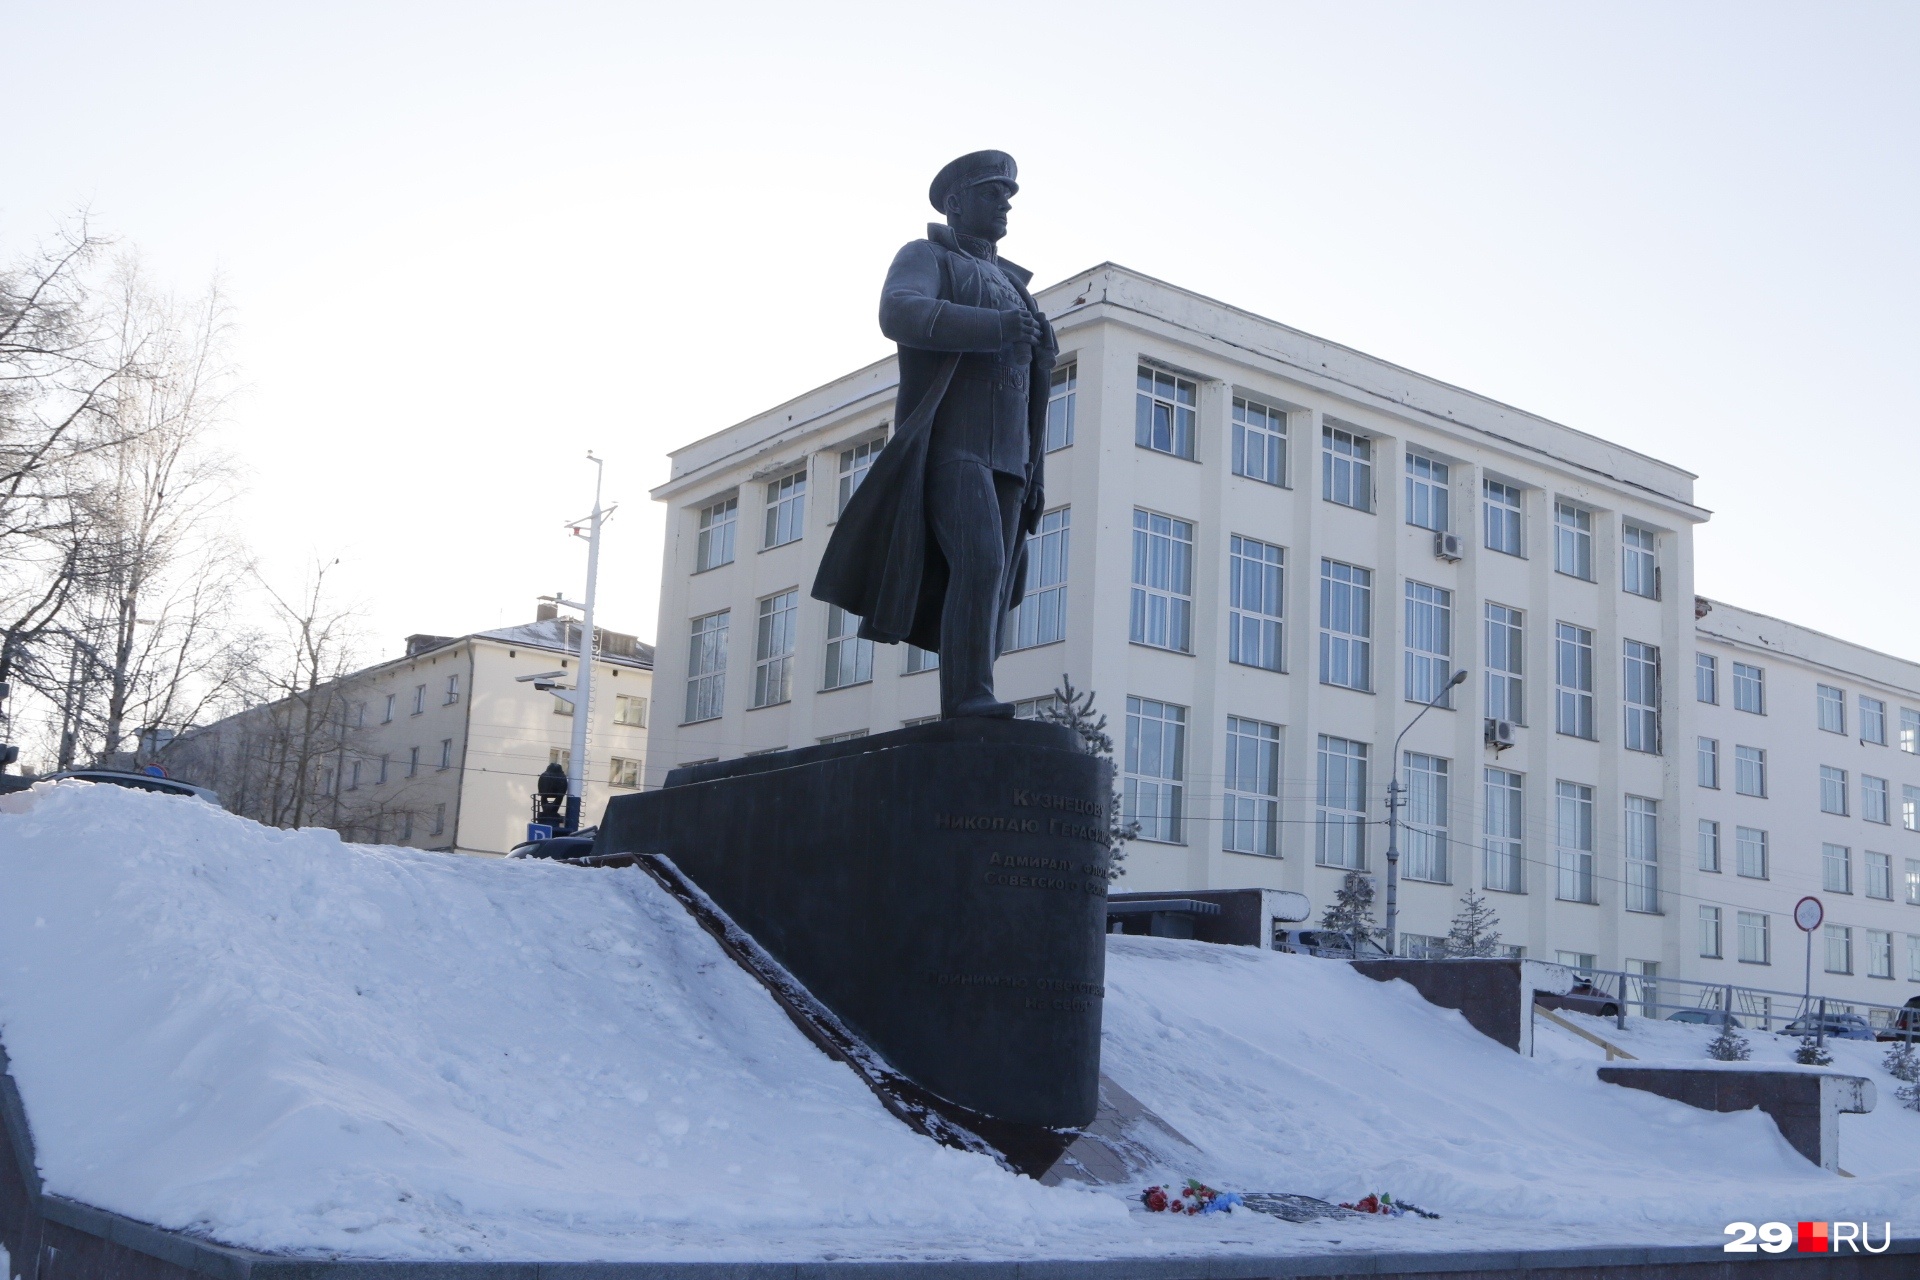 Институт для будущих моряков находится на набережной, рядом с памятником адмиралу Кузнецову